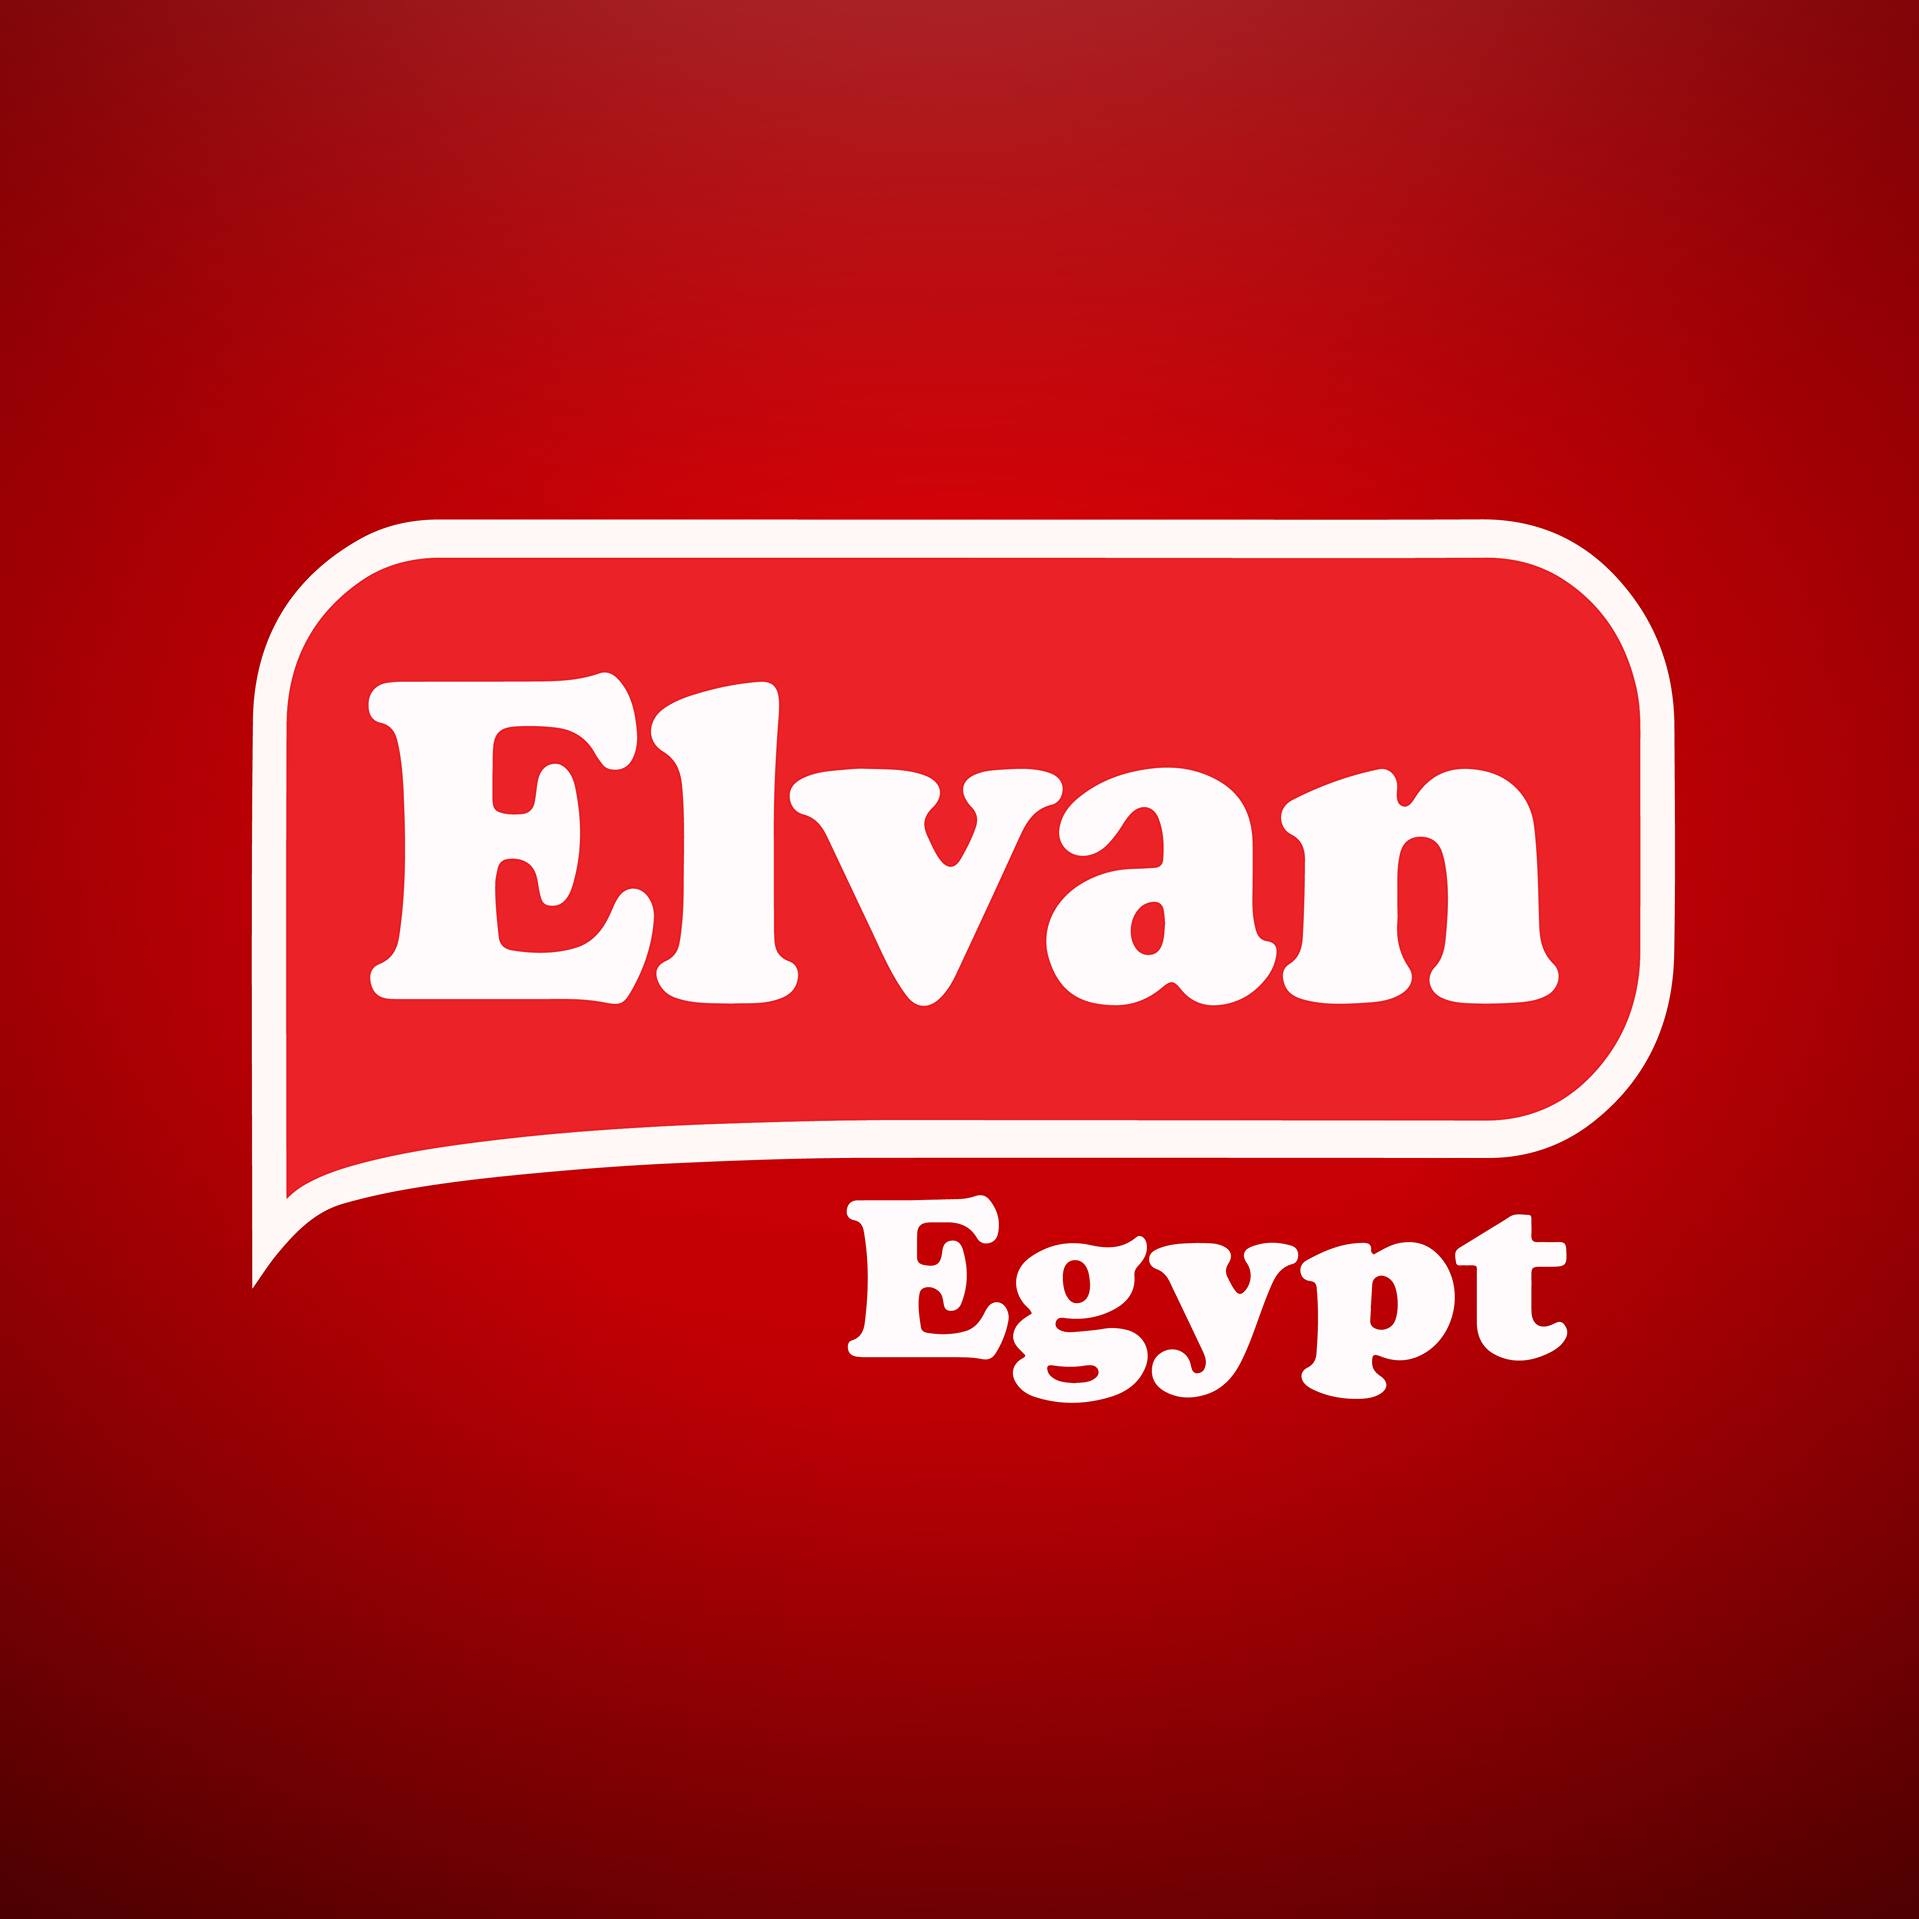 Elvan Egypt